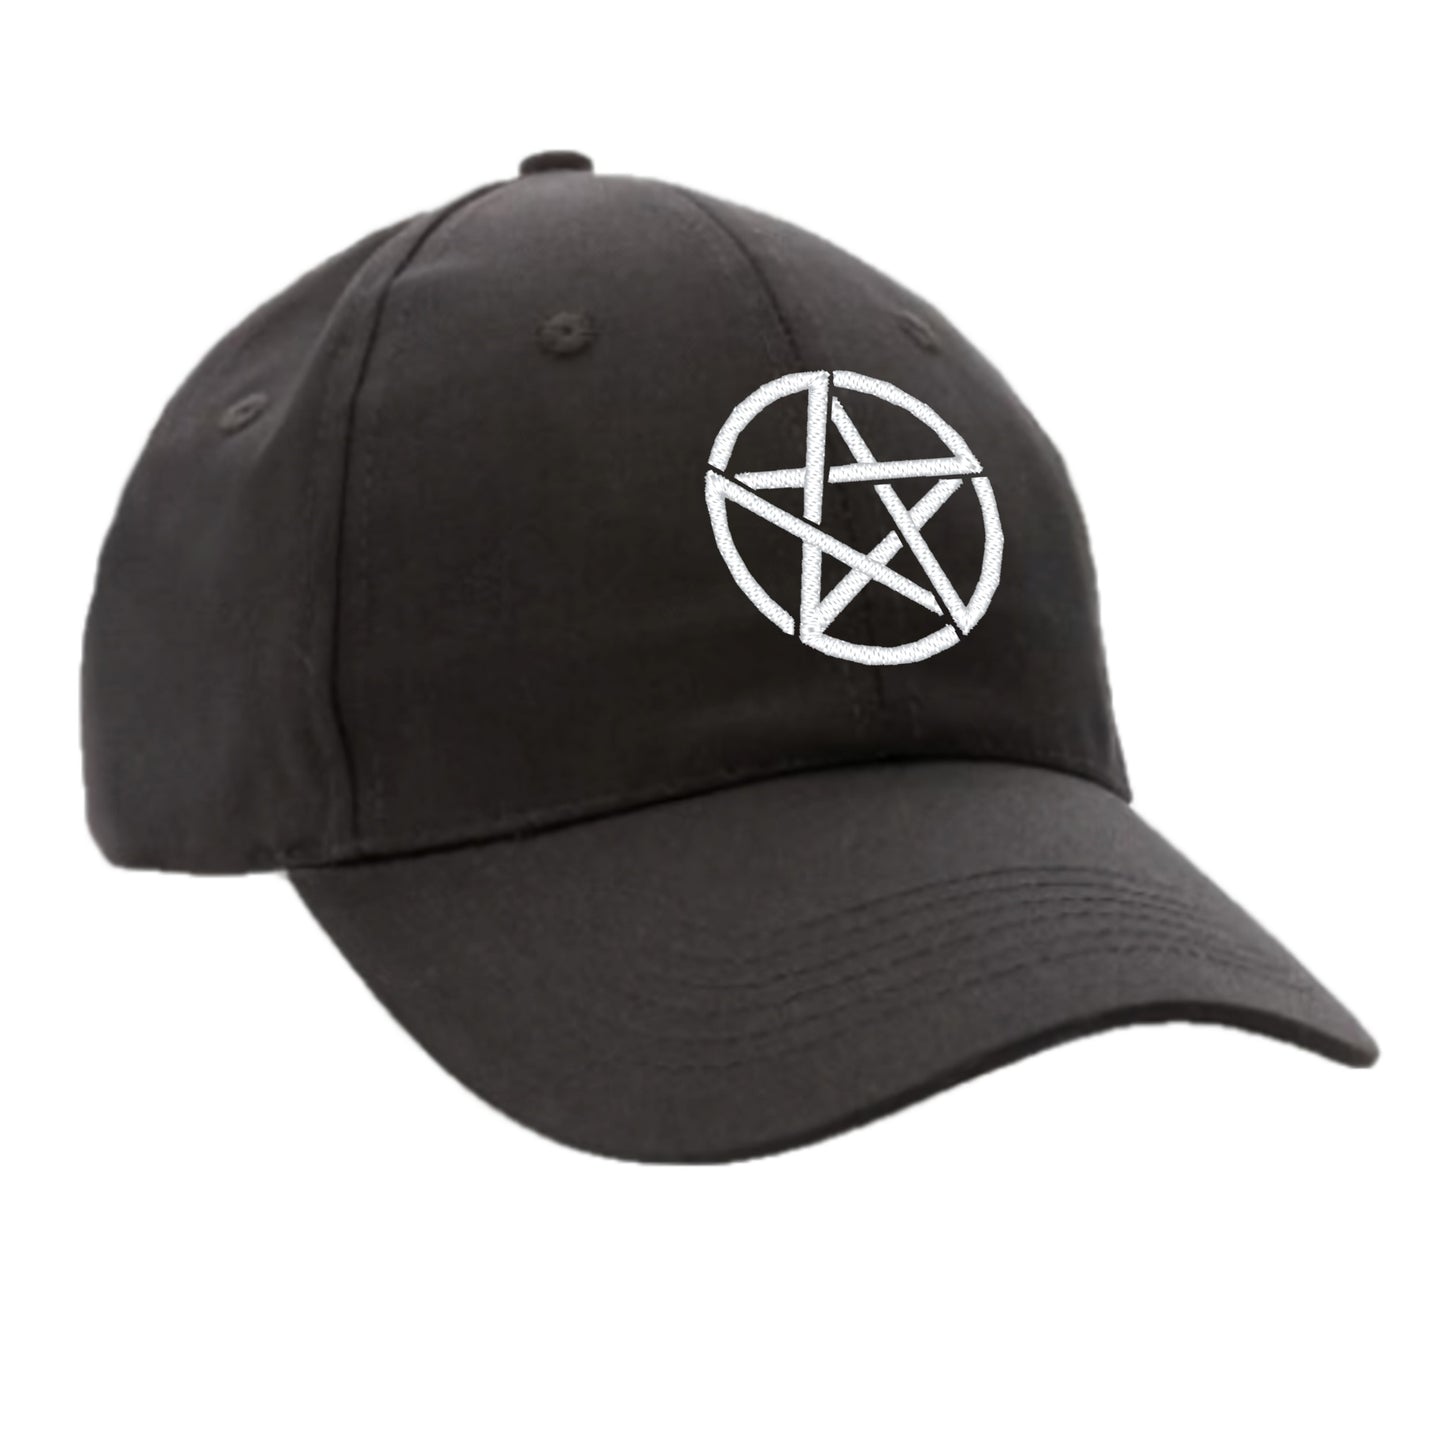 Baseball-Cap bestickt mit Pentagramm